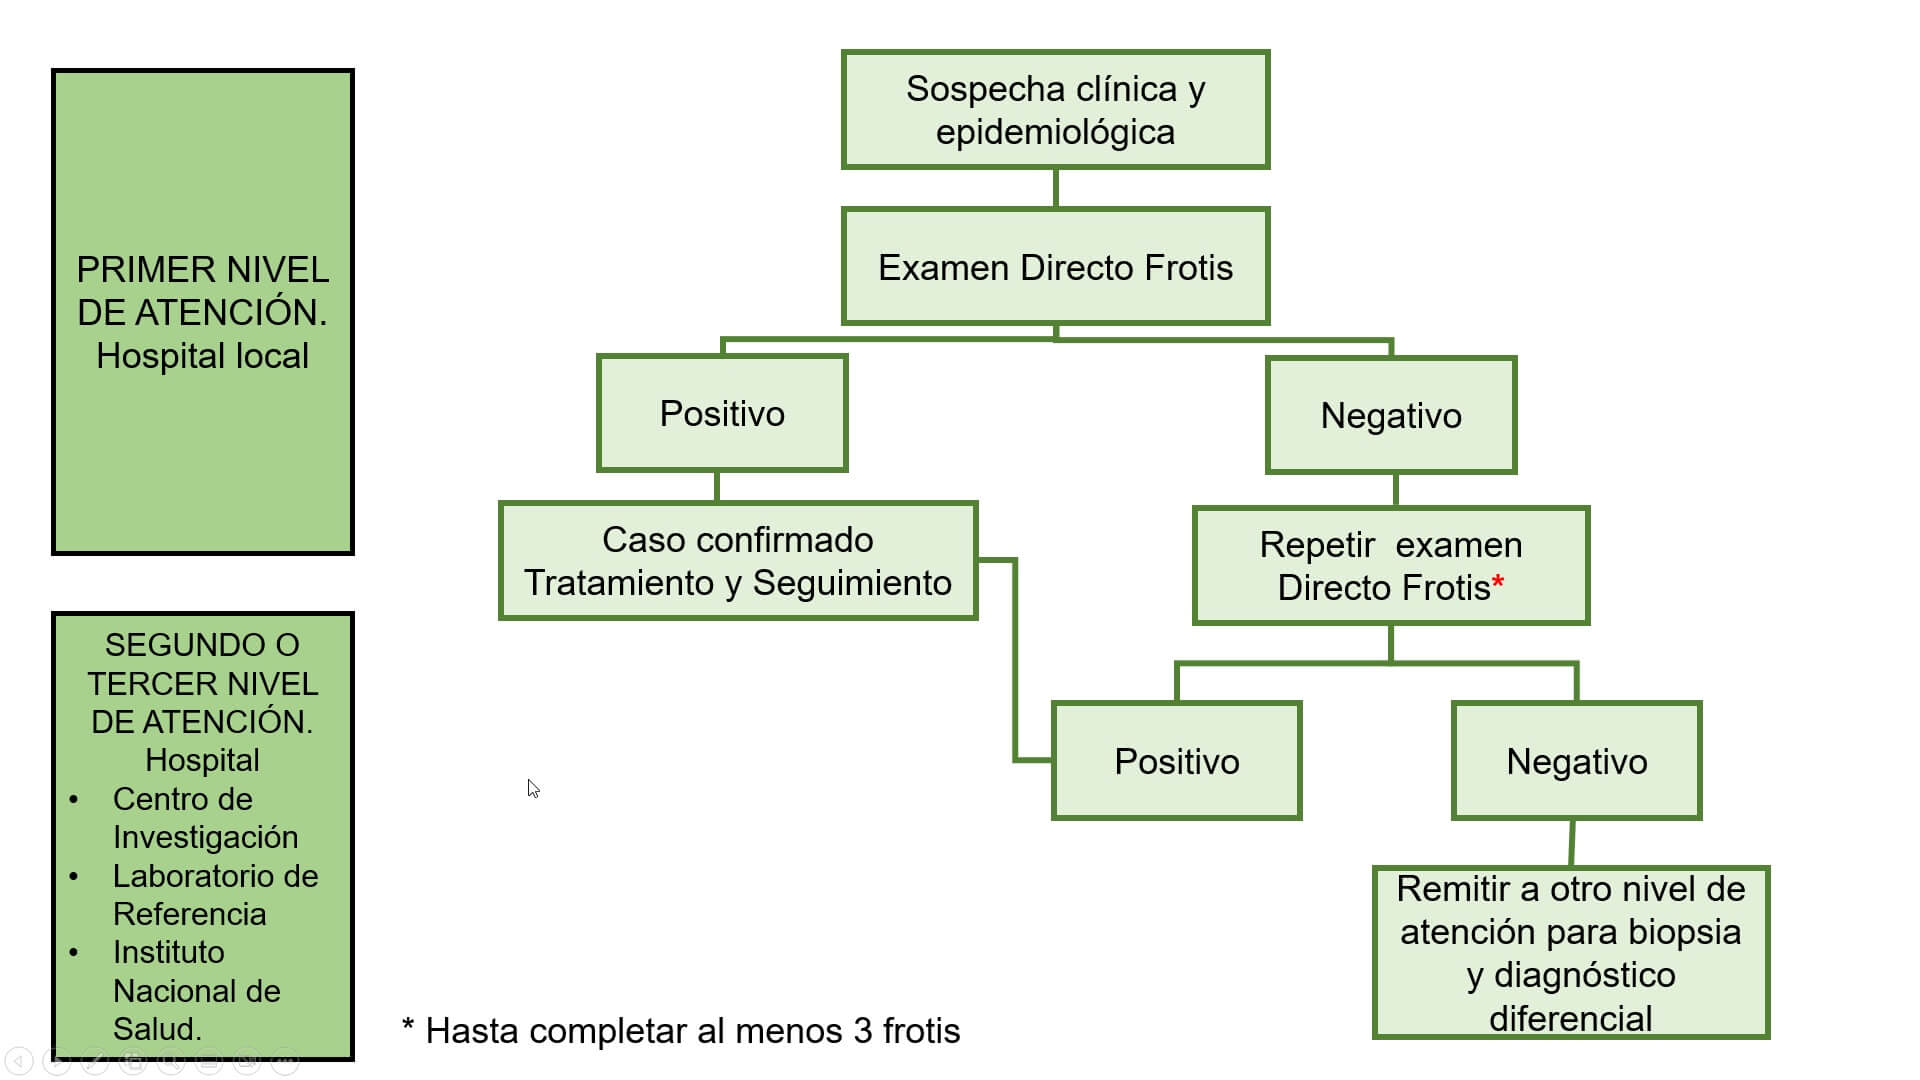 Diagrama 2: Cambios clínicos de la leishmaniasis 